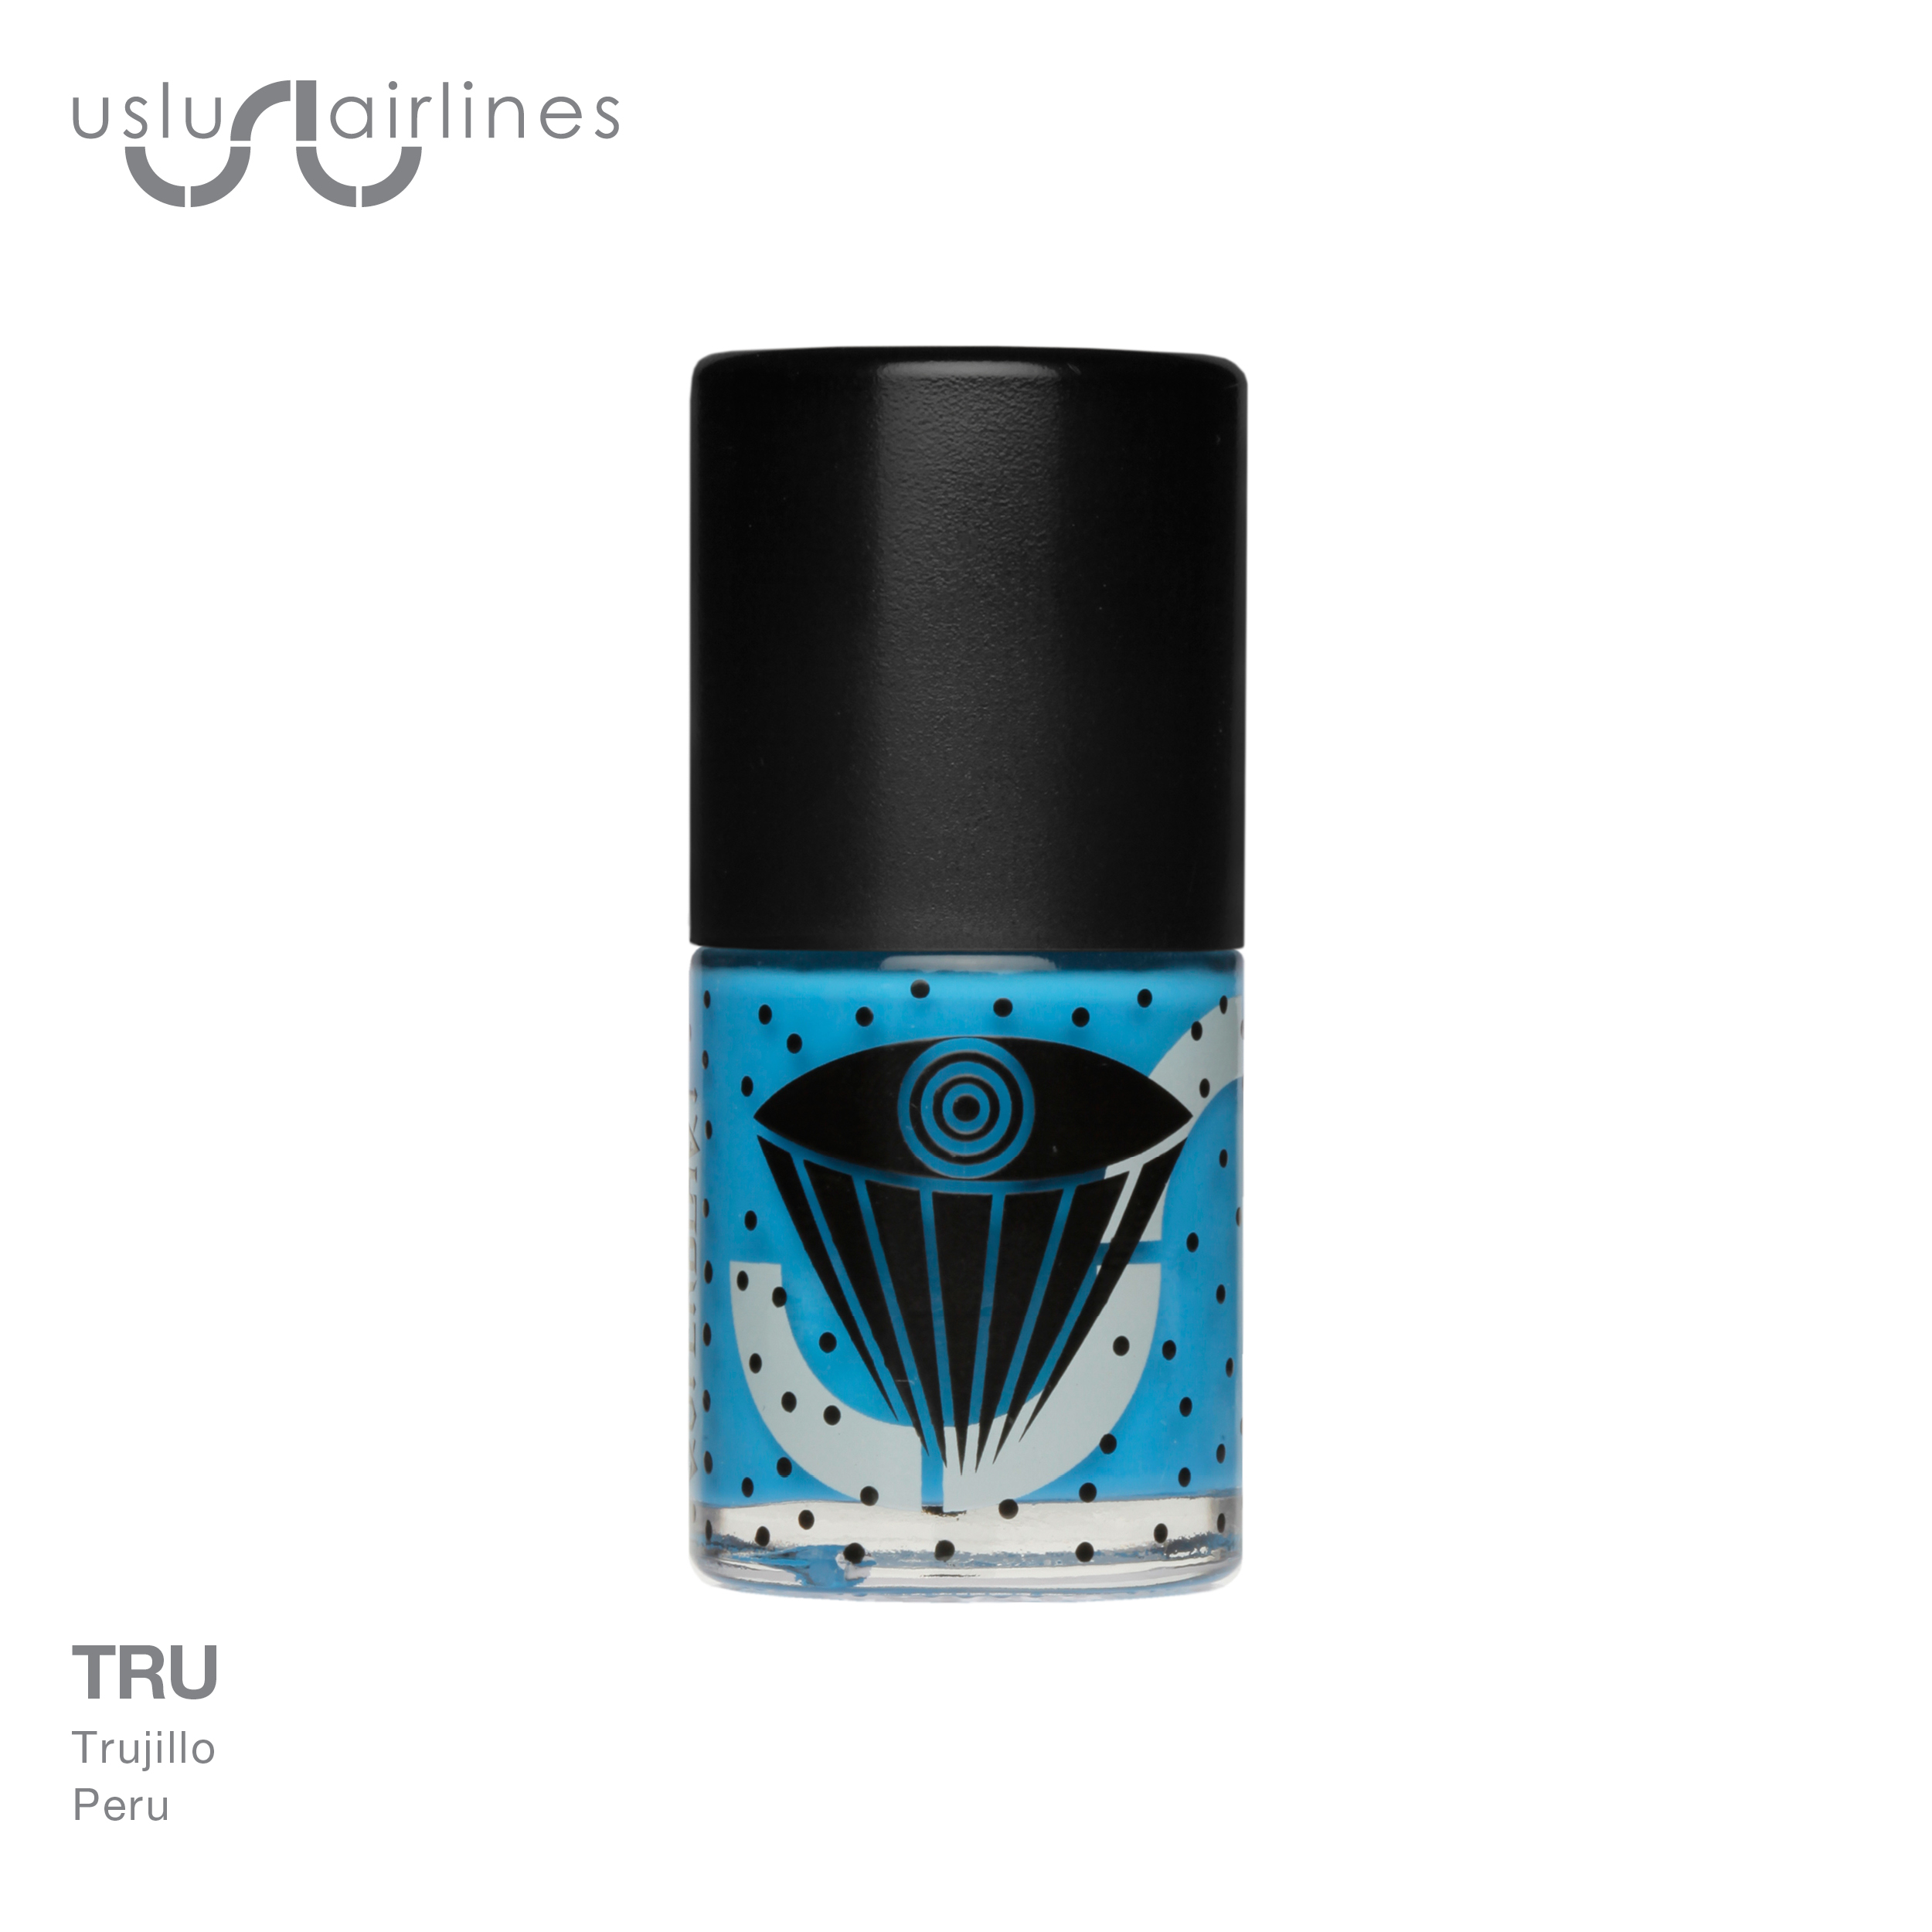 Uslu Airlines Collaborations TRU Black Top True Blue